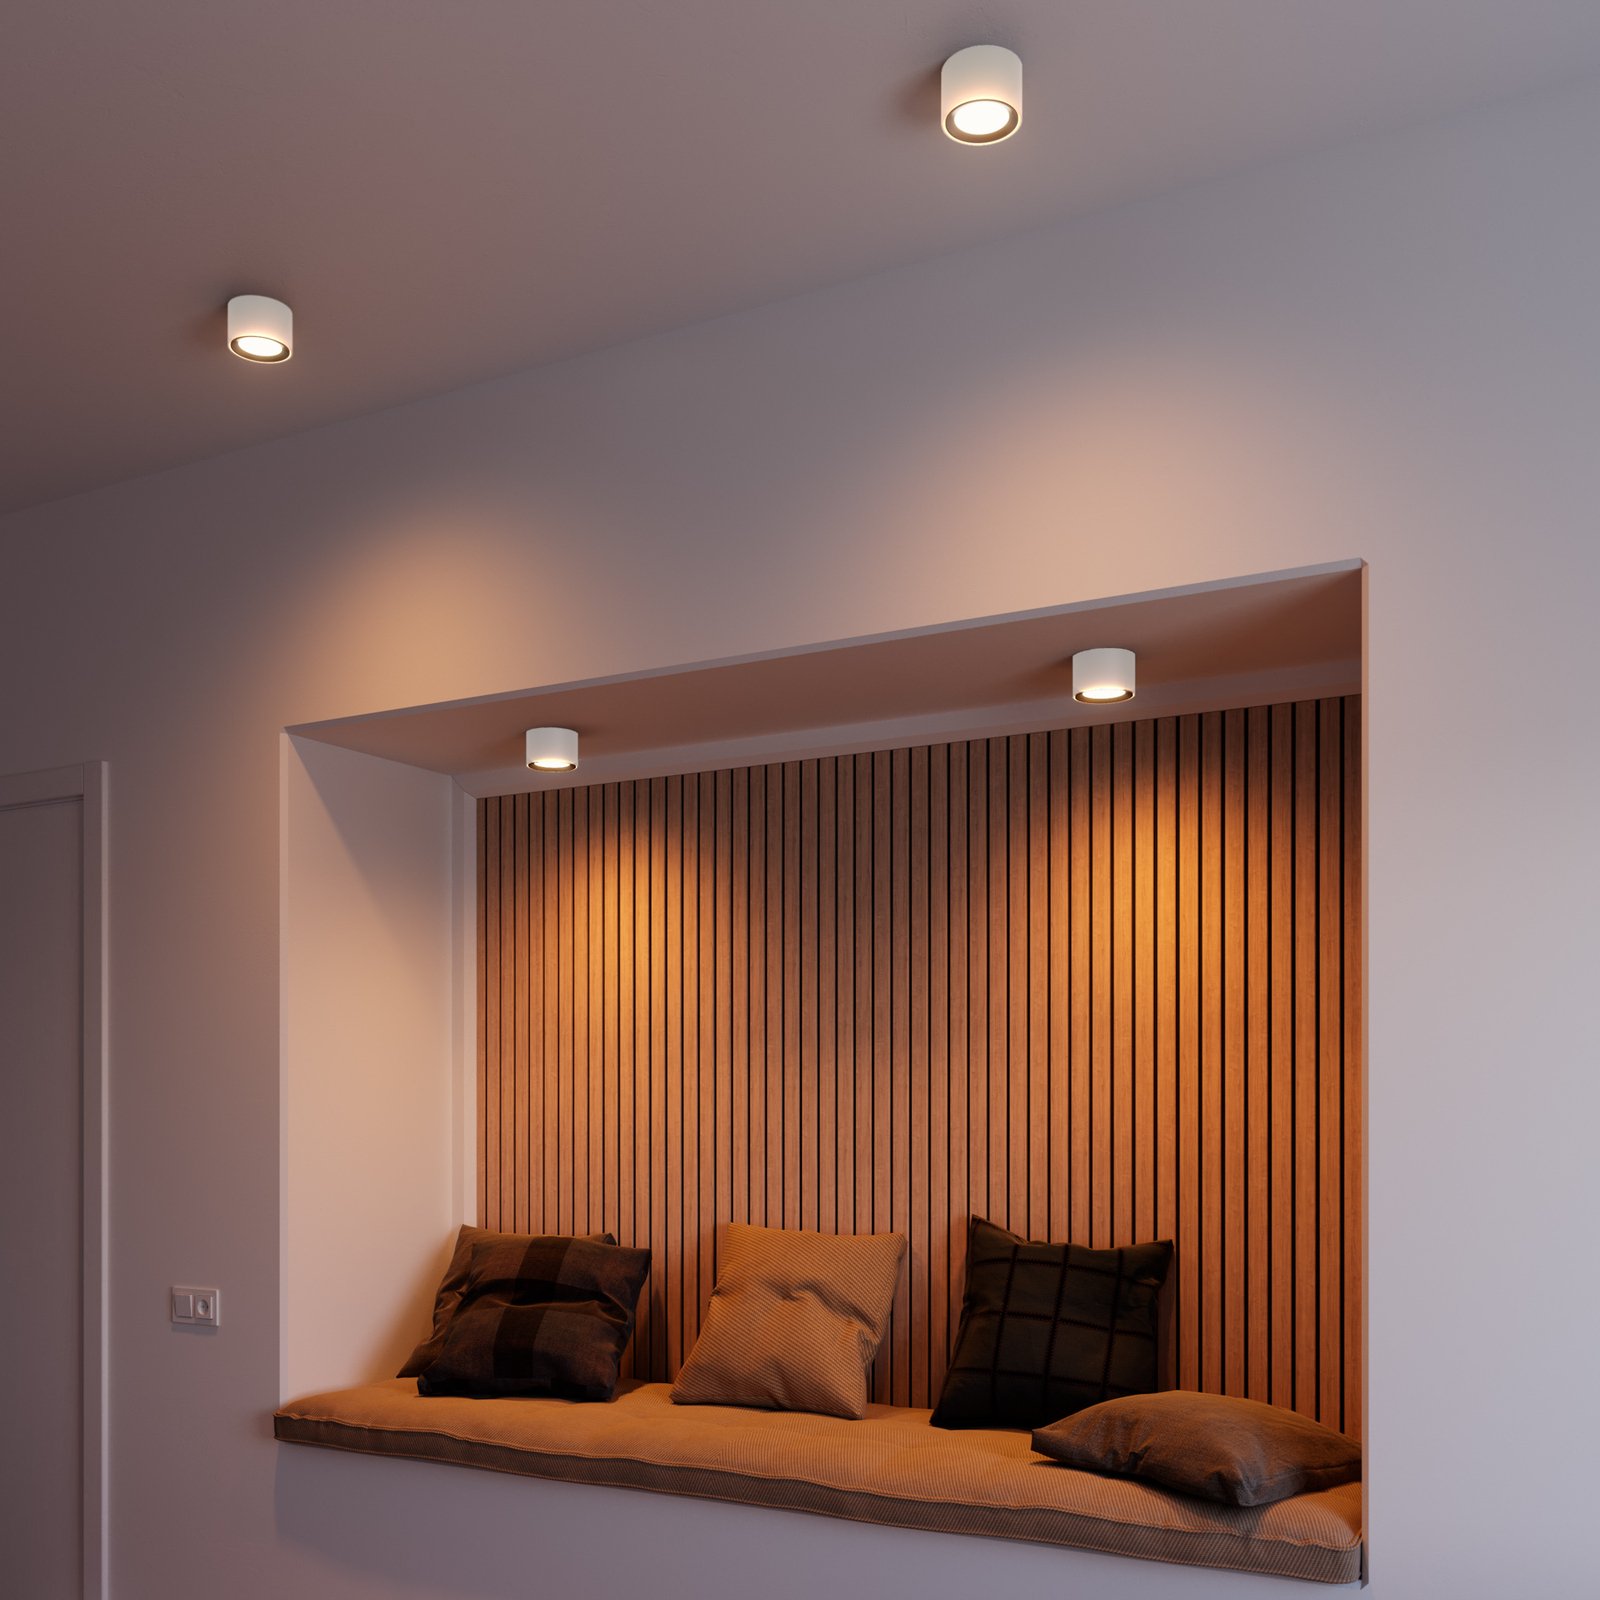 LED ceiling spotlight Landon Smart, white, H 8.2cm